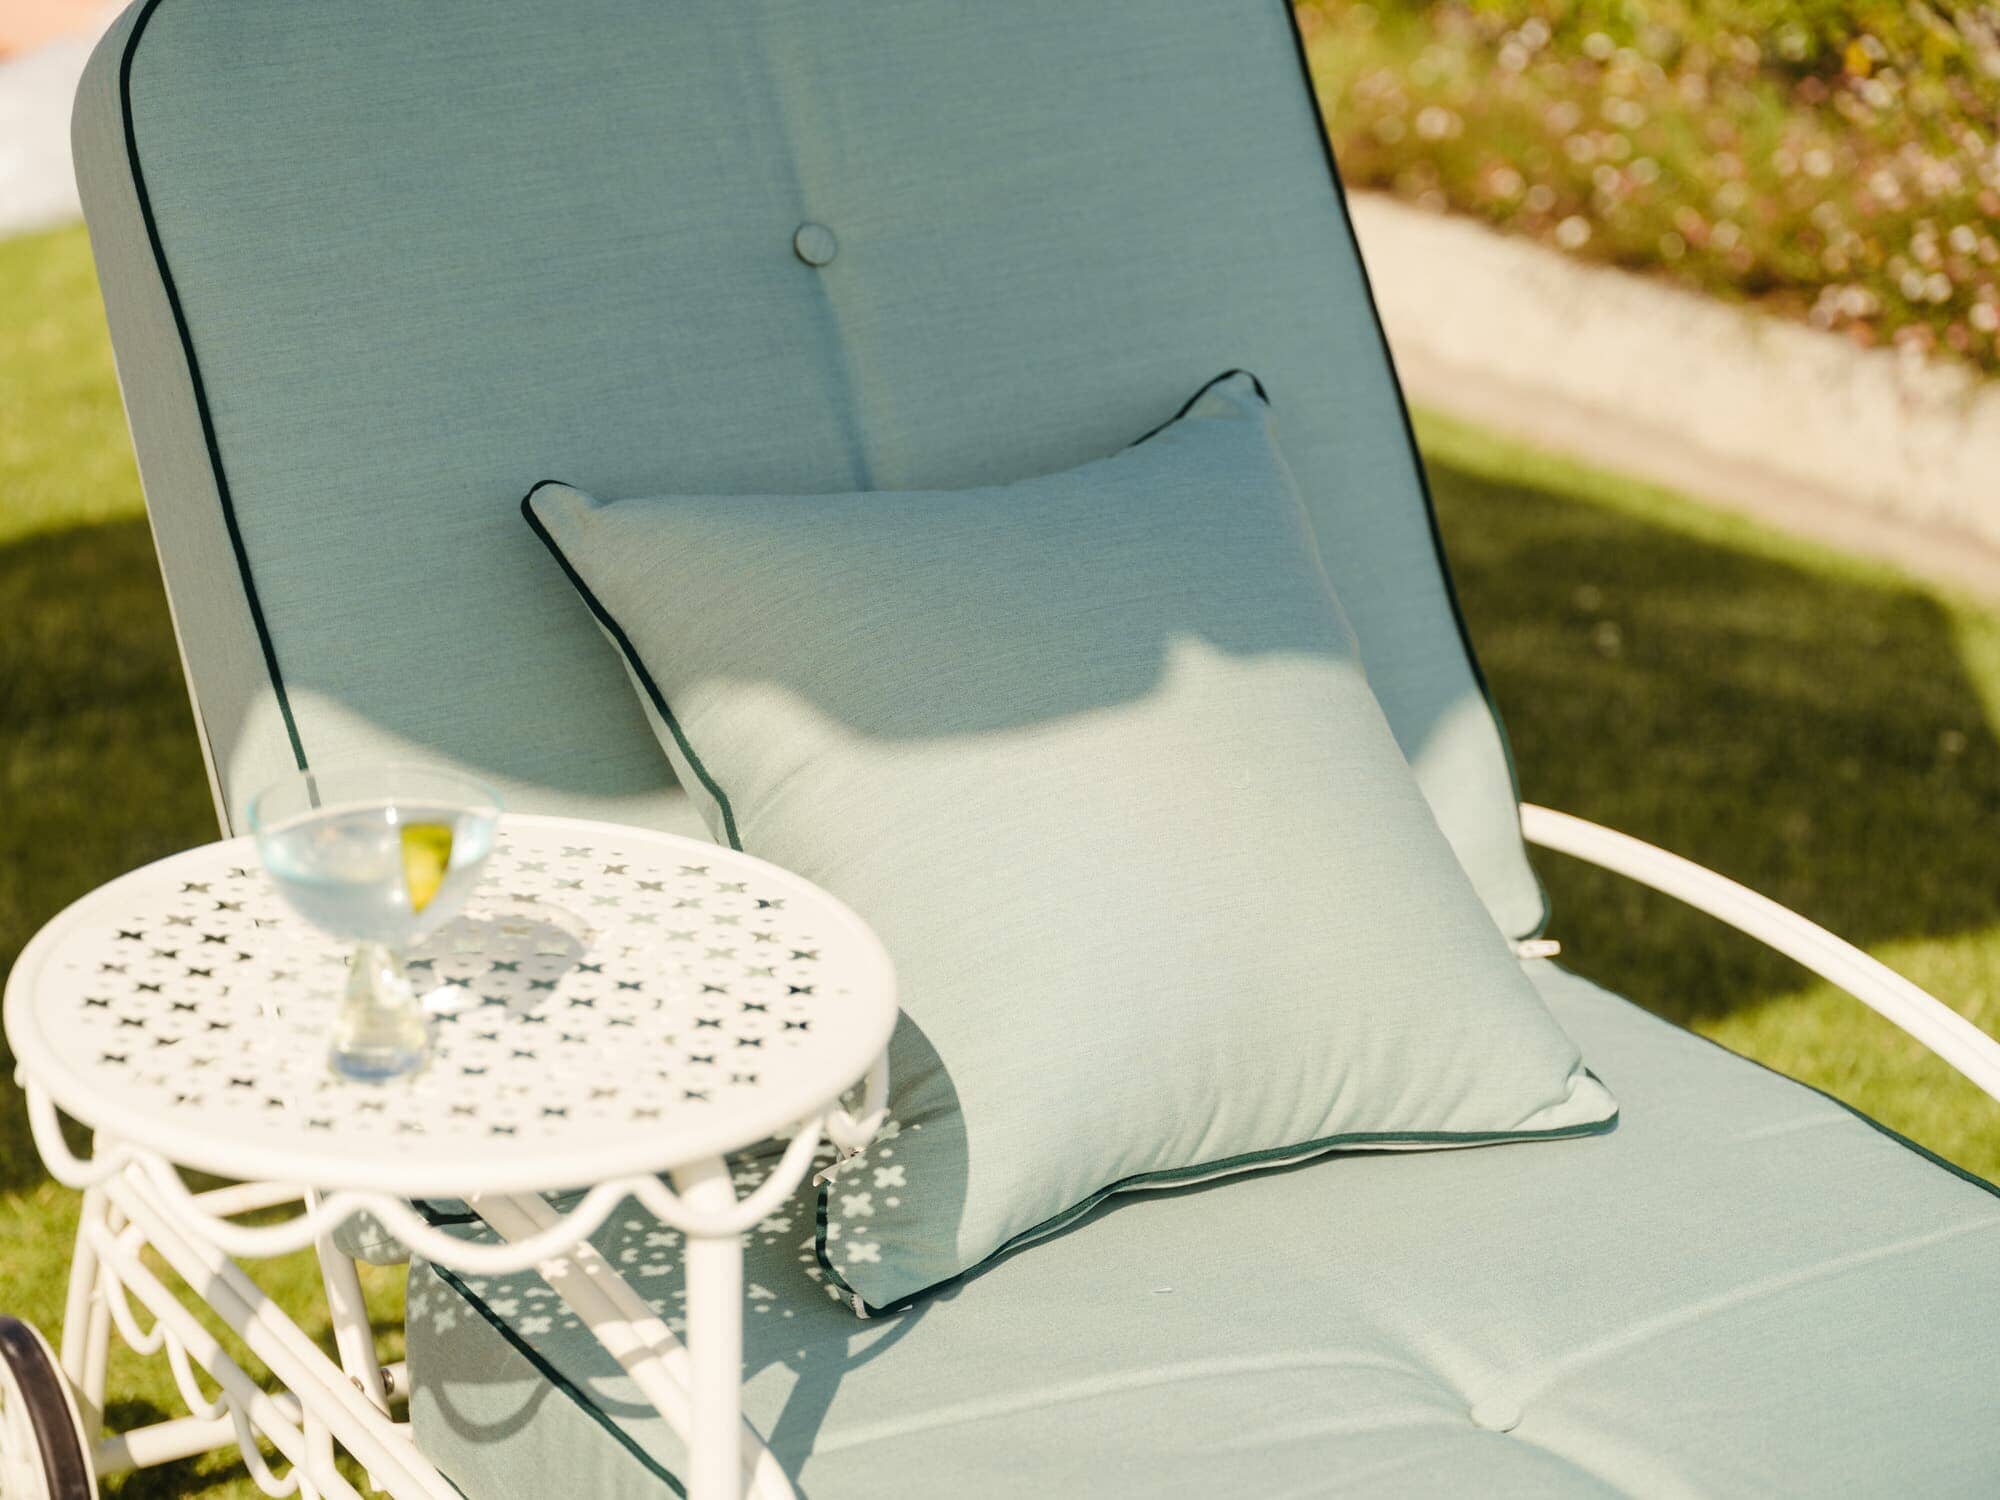 The Al Fresco Sun Lounger Cushion - Rivie Green Al Fresco Sun Lounger Cushion Business & Pleasure Co Aus 